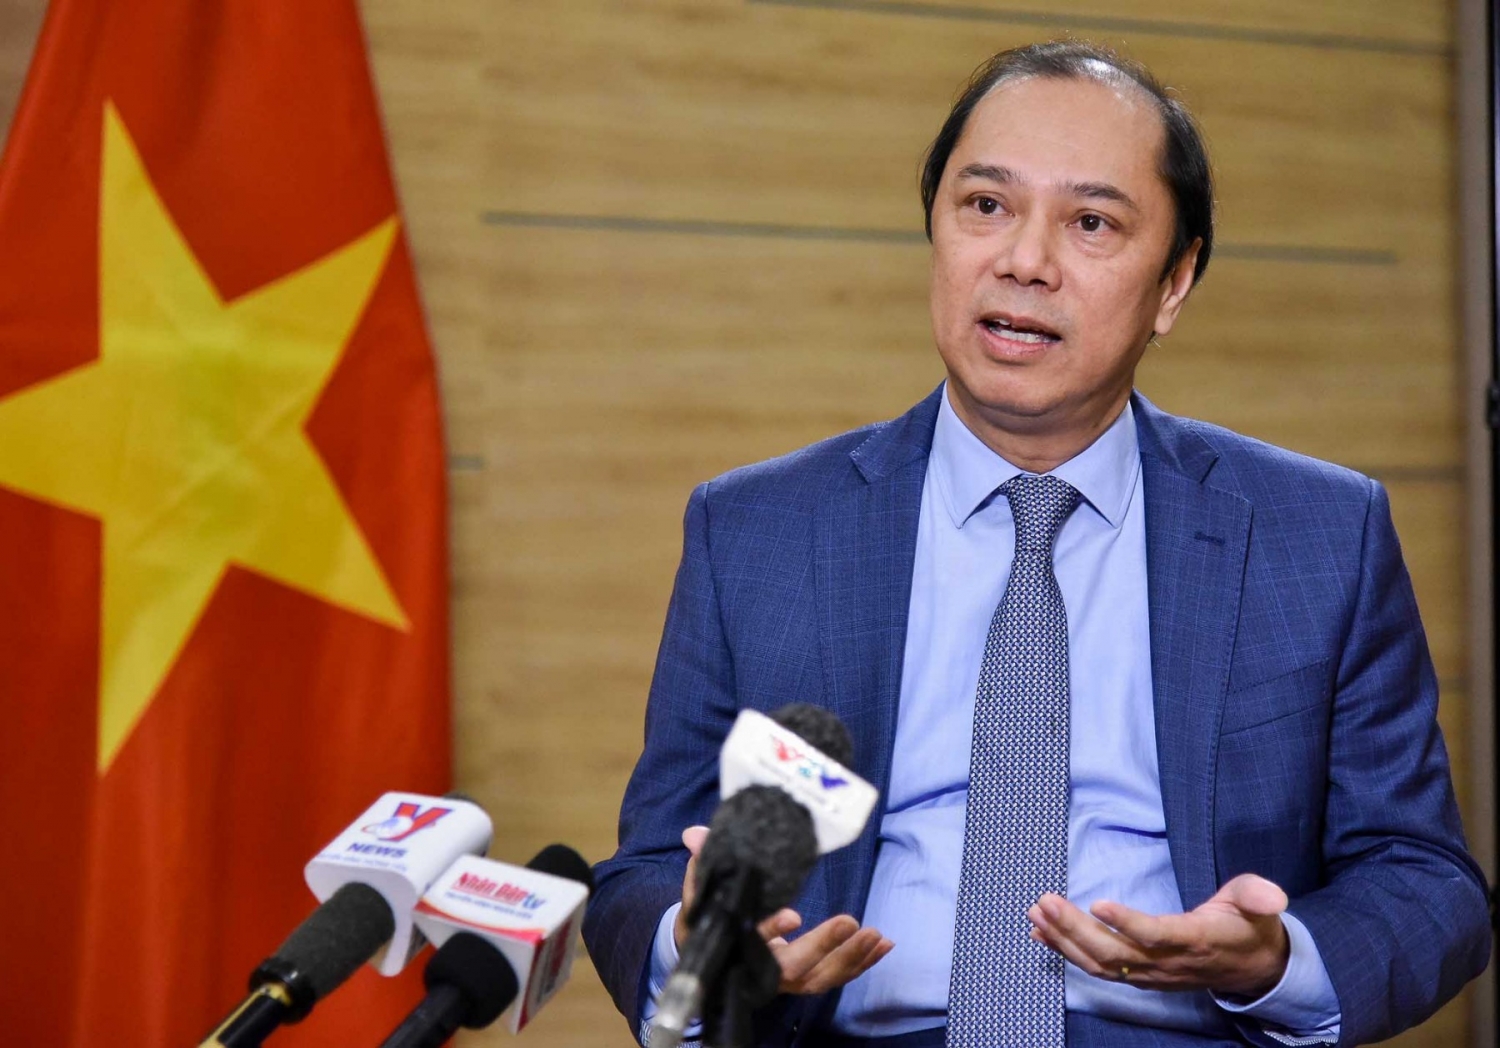 Thứ trưởng Ngoại giao Nguyễn Quốc Dũng trả lời phỏng vấn về kết quả Hội nghị cấp cao ASEAN